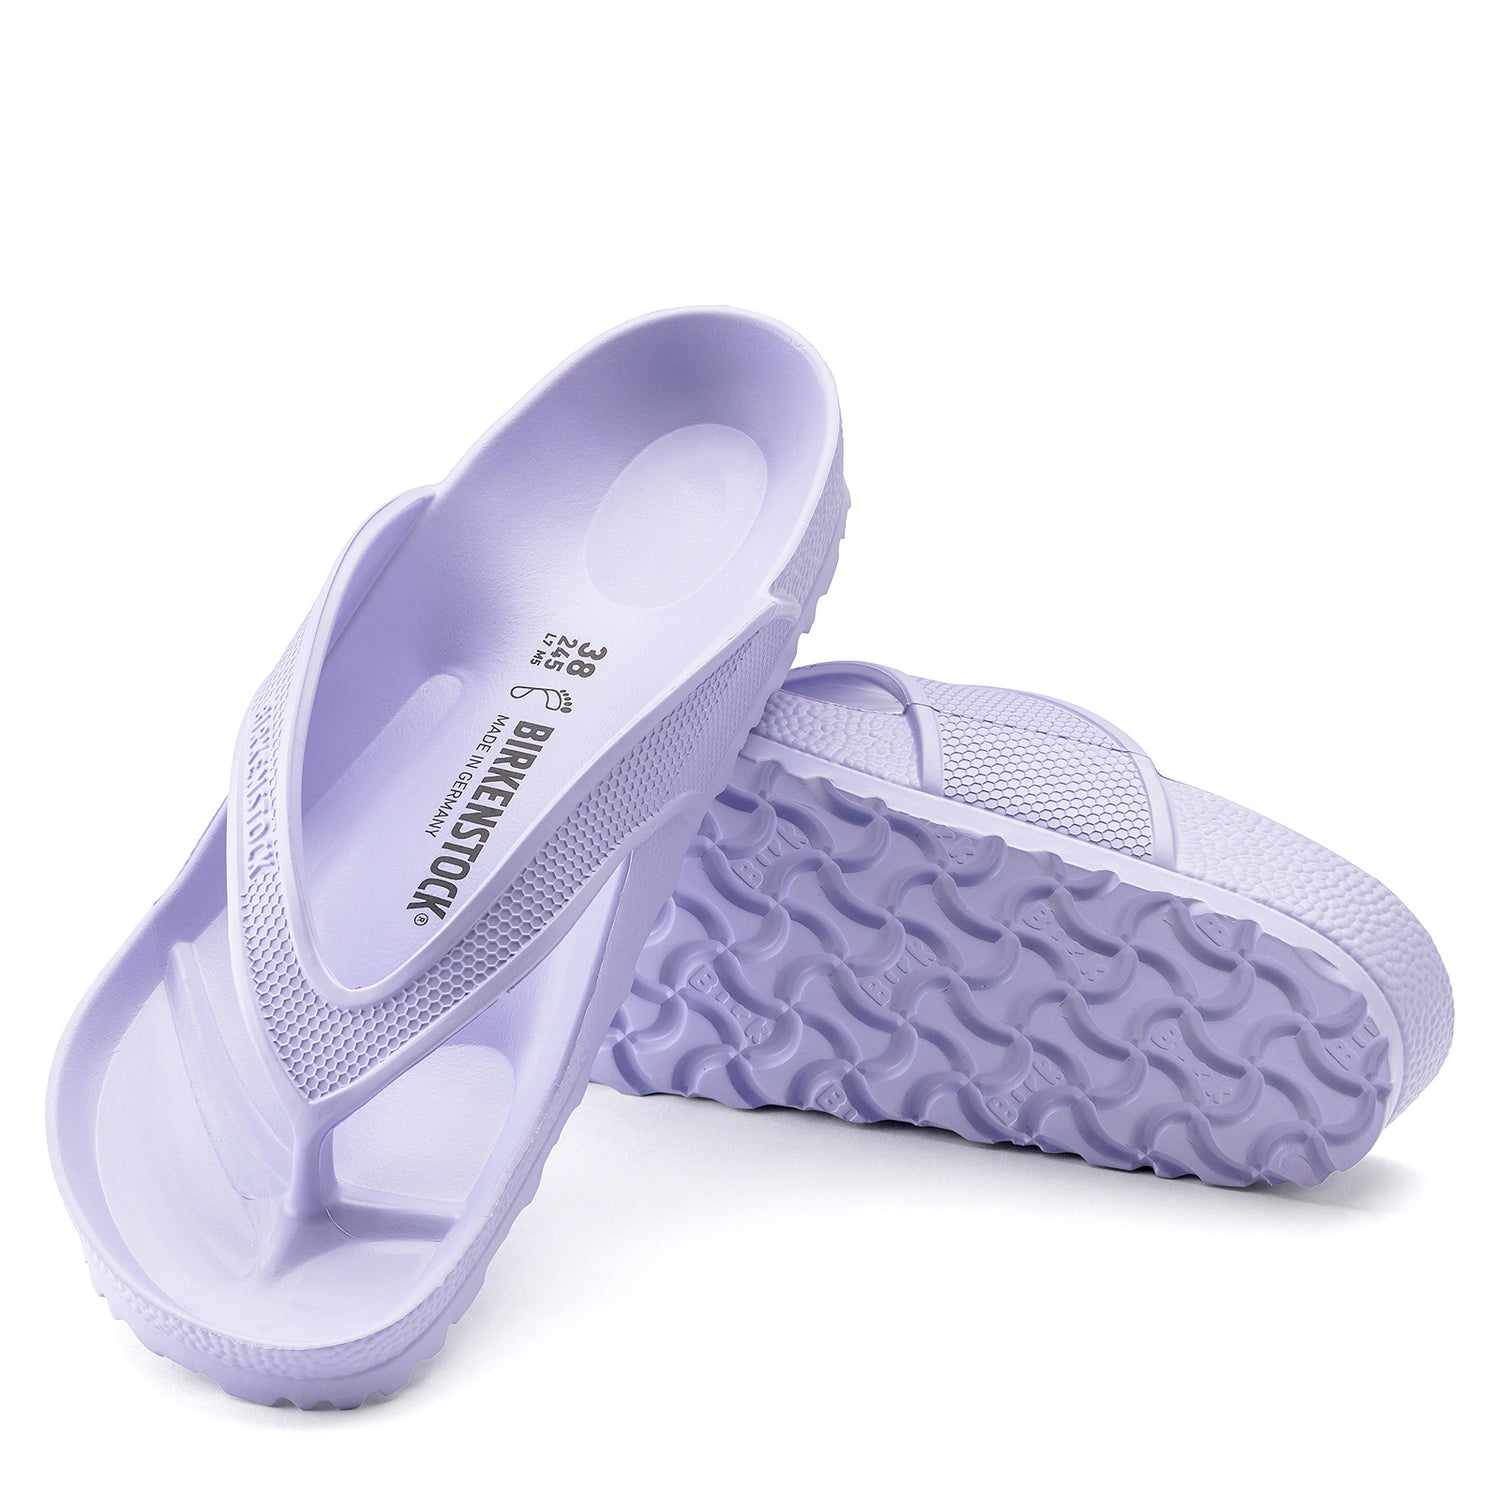 Peltz Shoes  Women's Birkenstock Honolulu EVA Sandal PURPLE 1019 055 R